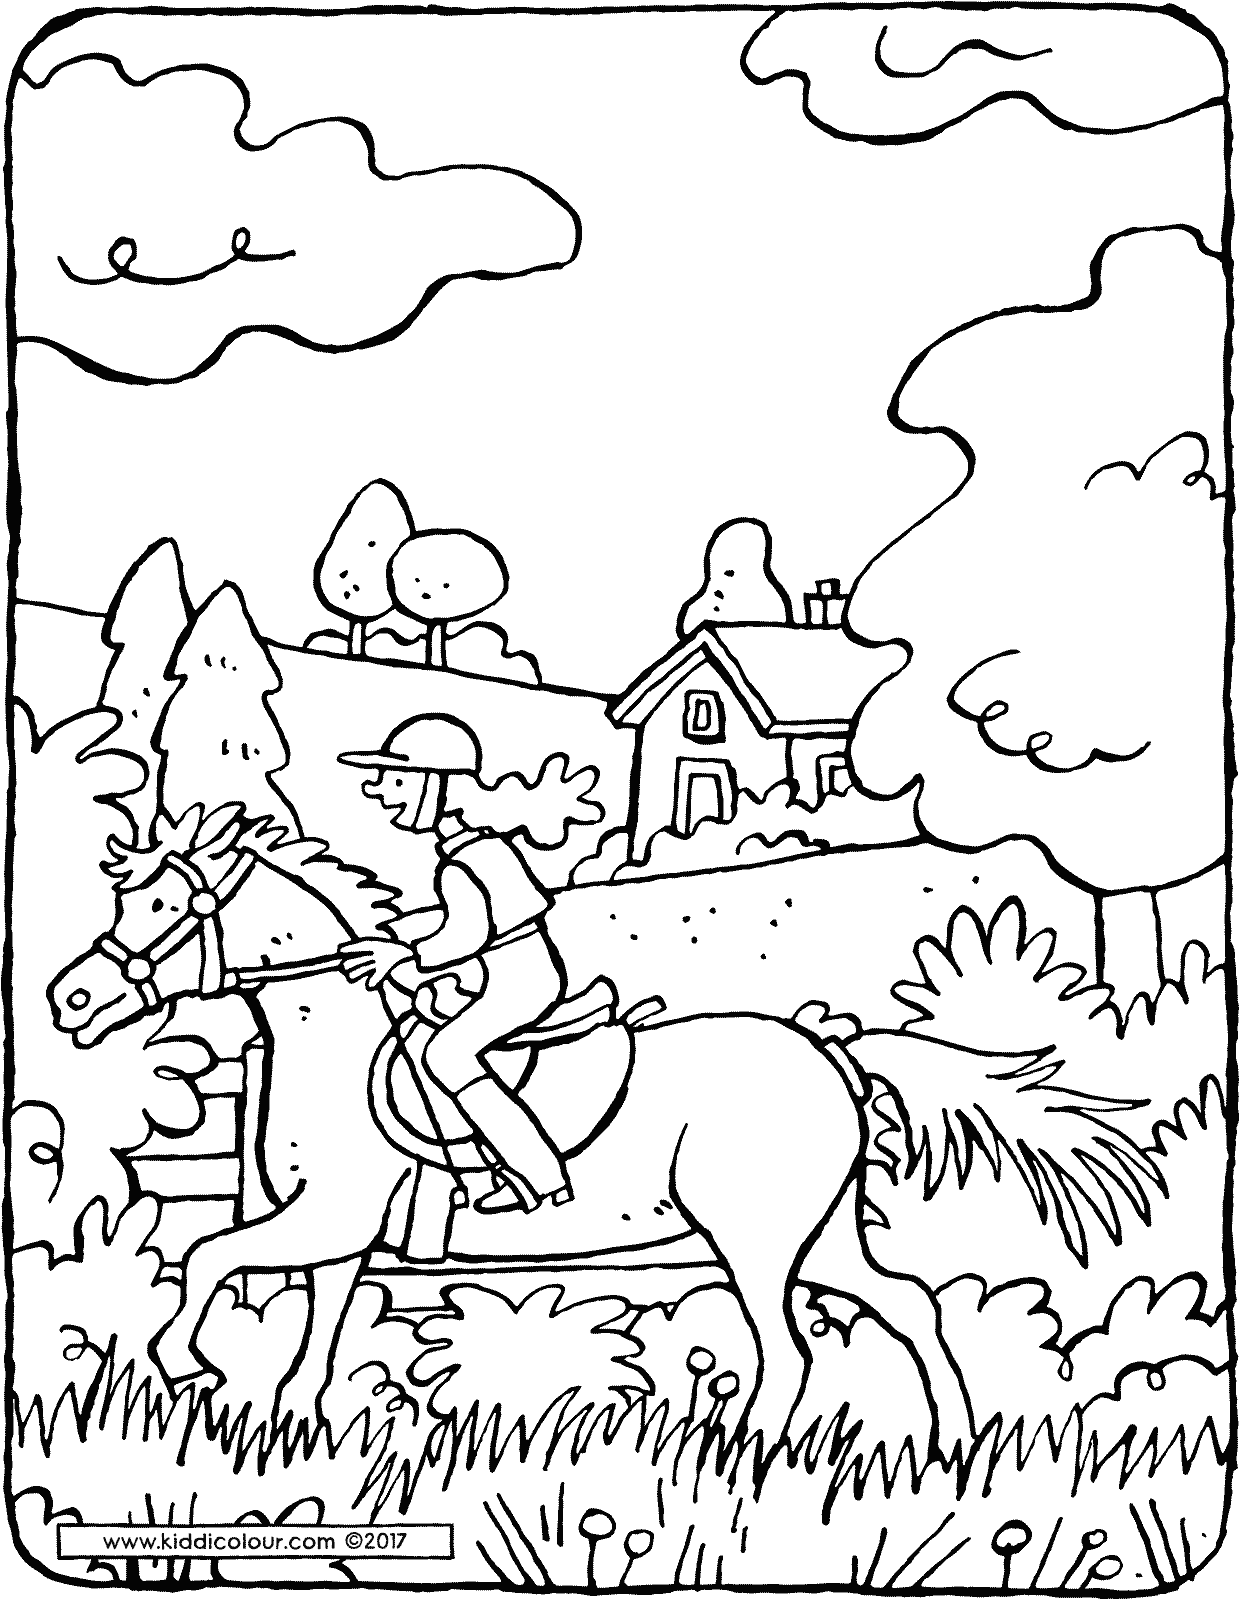 horse riding - kiddicolour